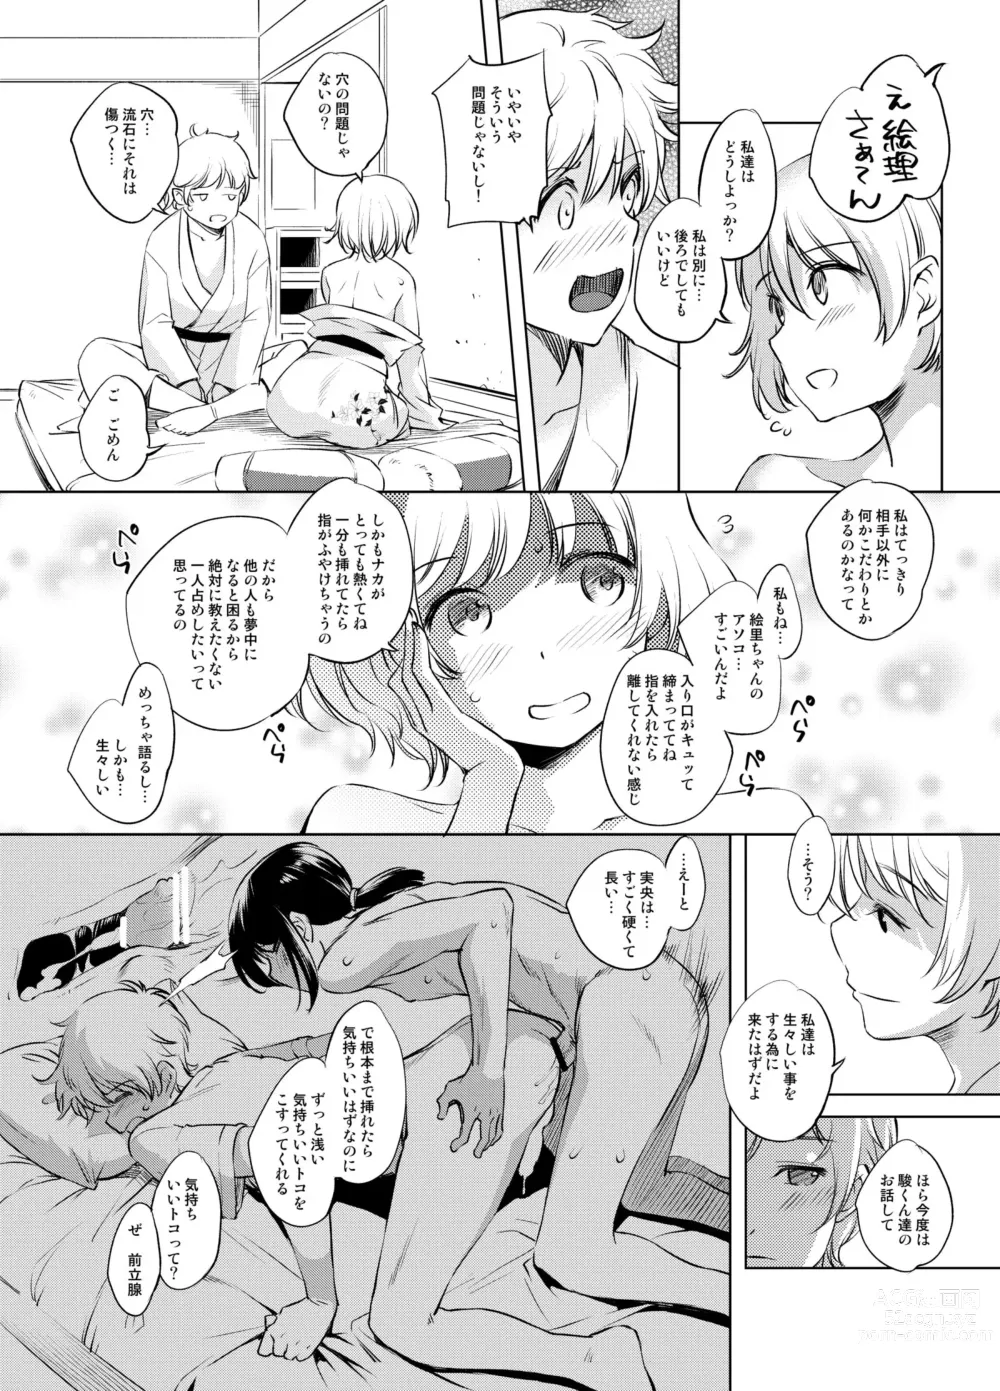 Page 3 of doujinshi Shun Suzu Manga